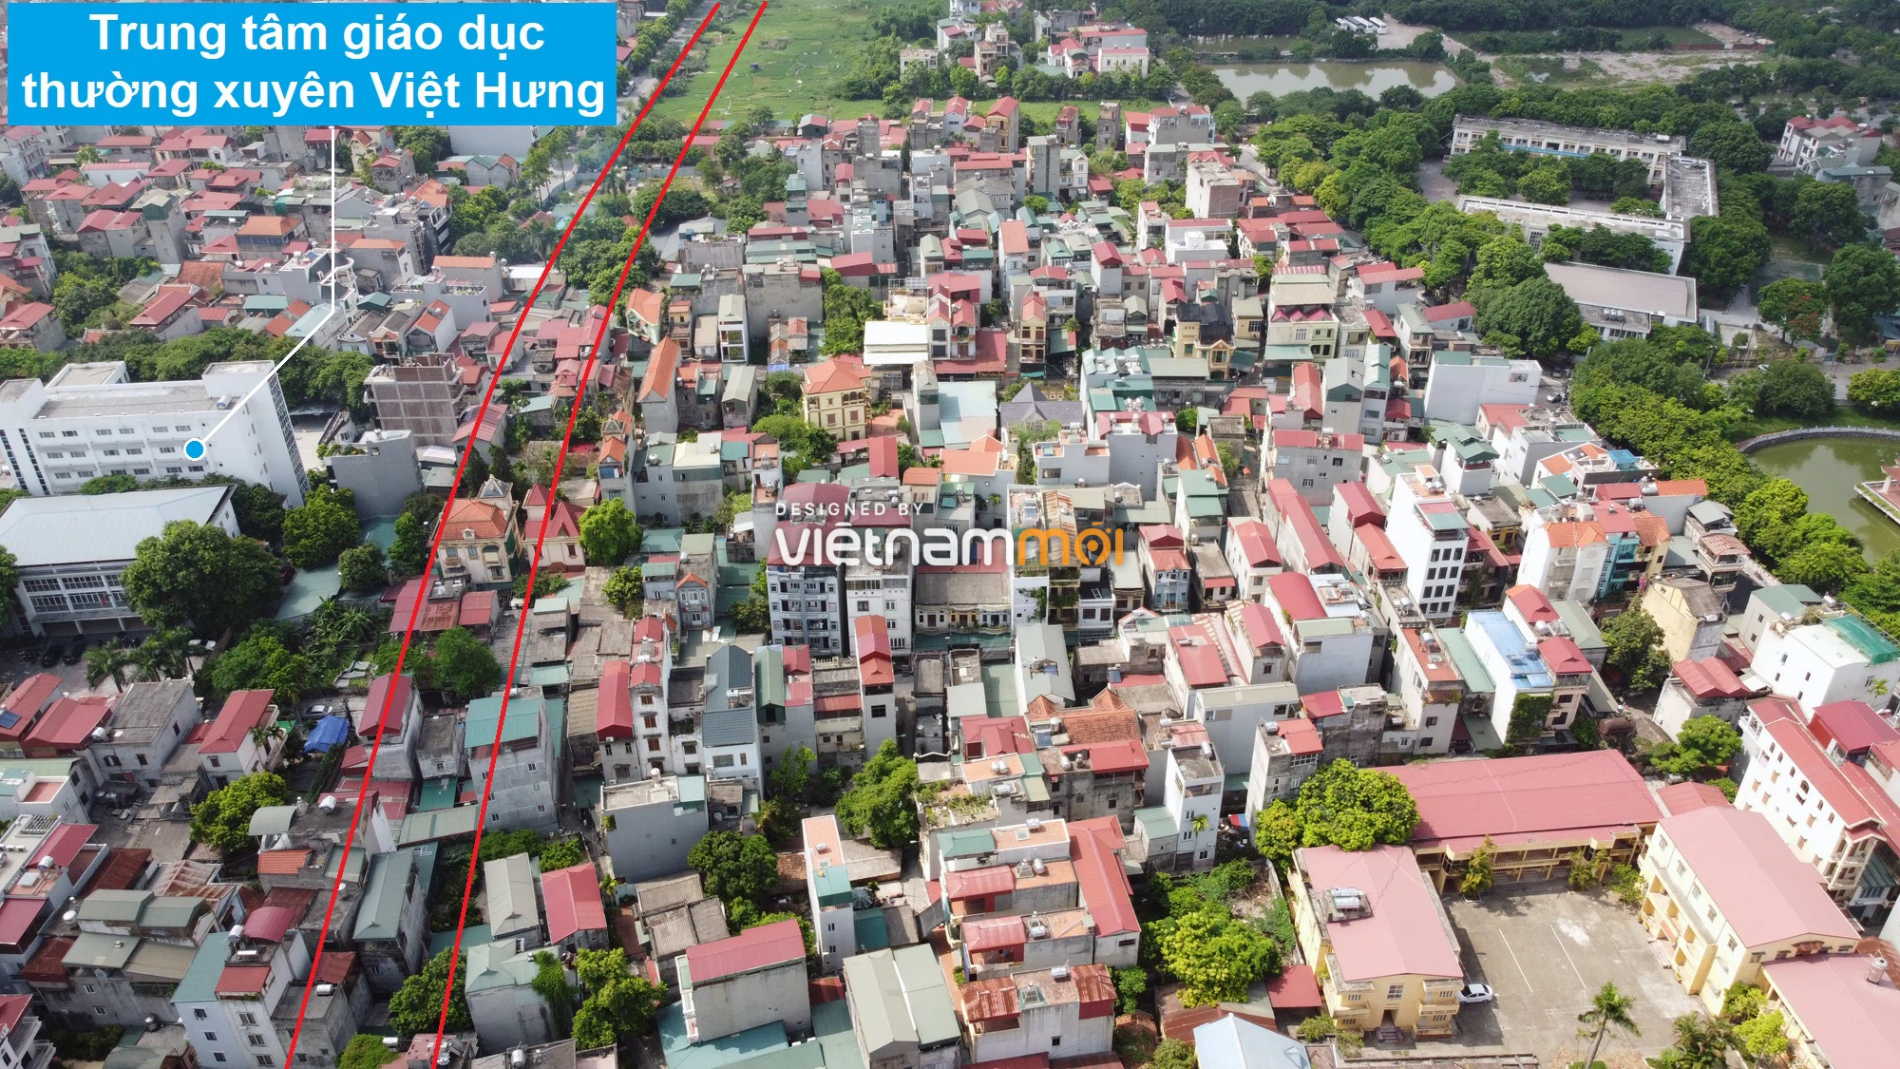 Những khu đất sắp thu hồi để mở đường ở phường Việt Hưng, Long Biên, Hà Nội (phần 1) - Ảnh 17.